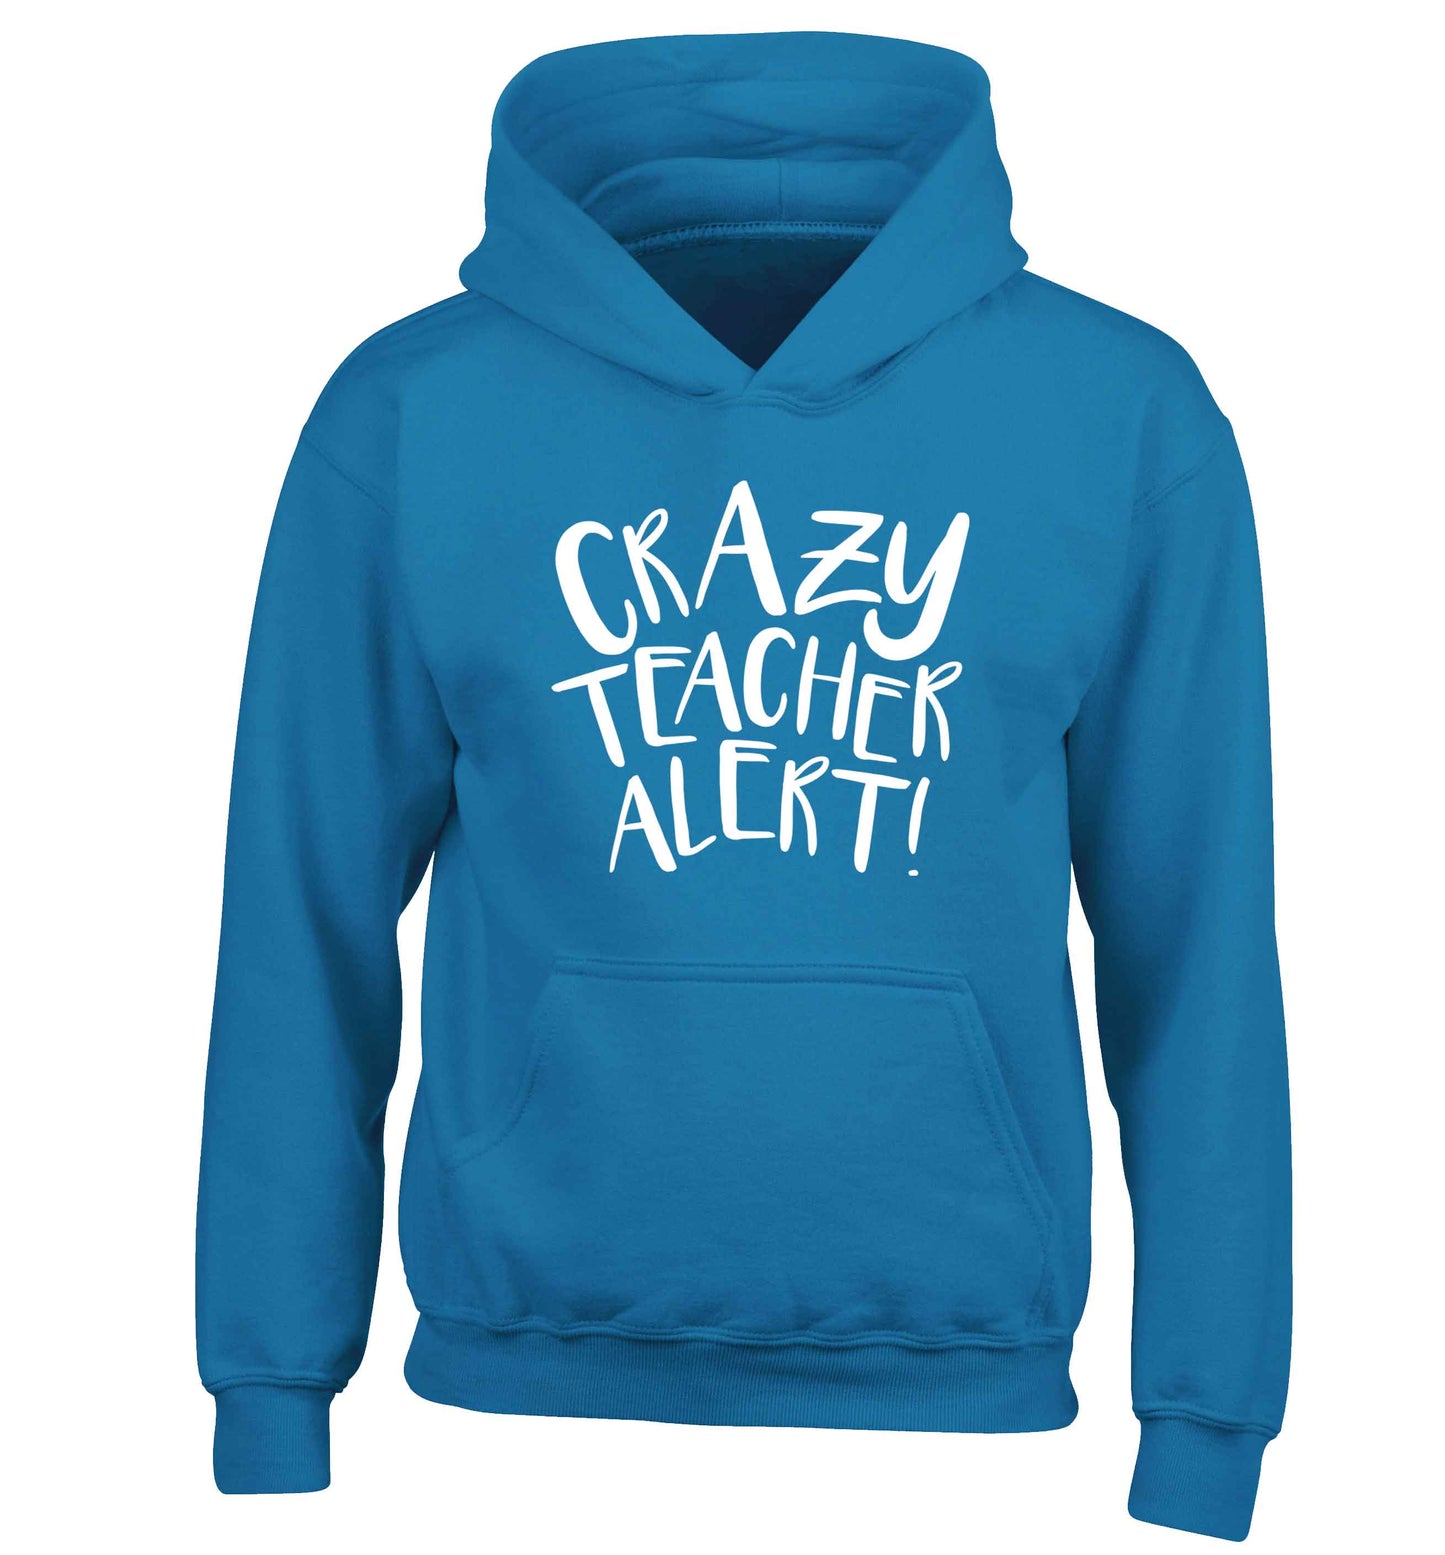 Crazy teacher alert children's blue hoodie 12-13 Years